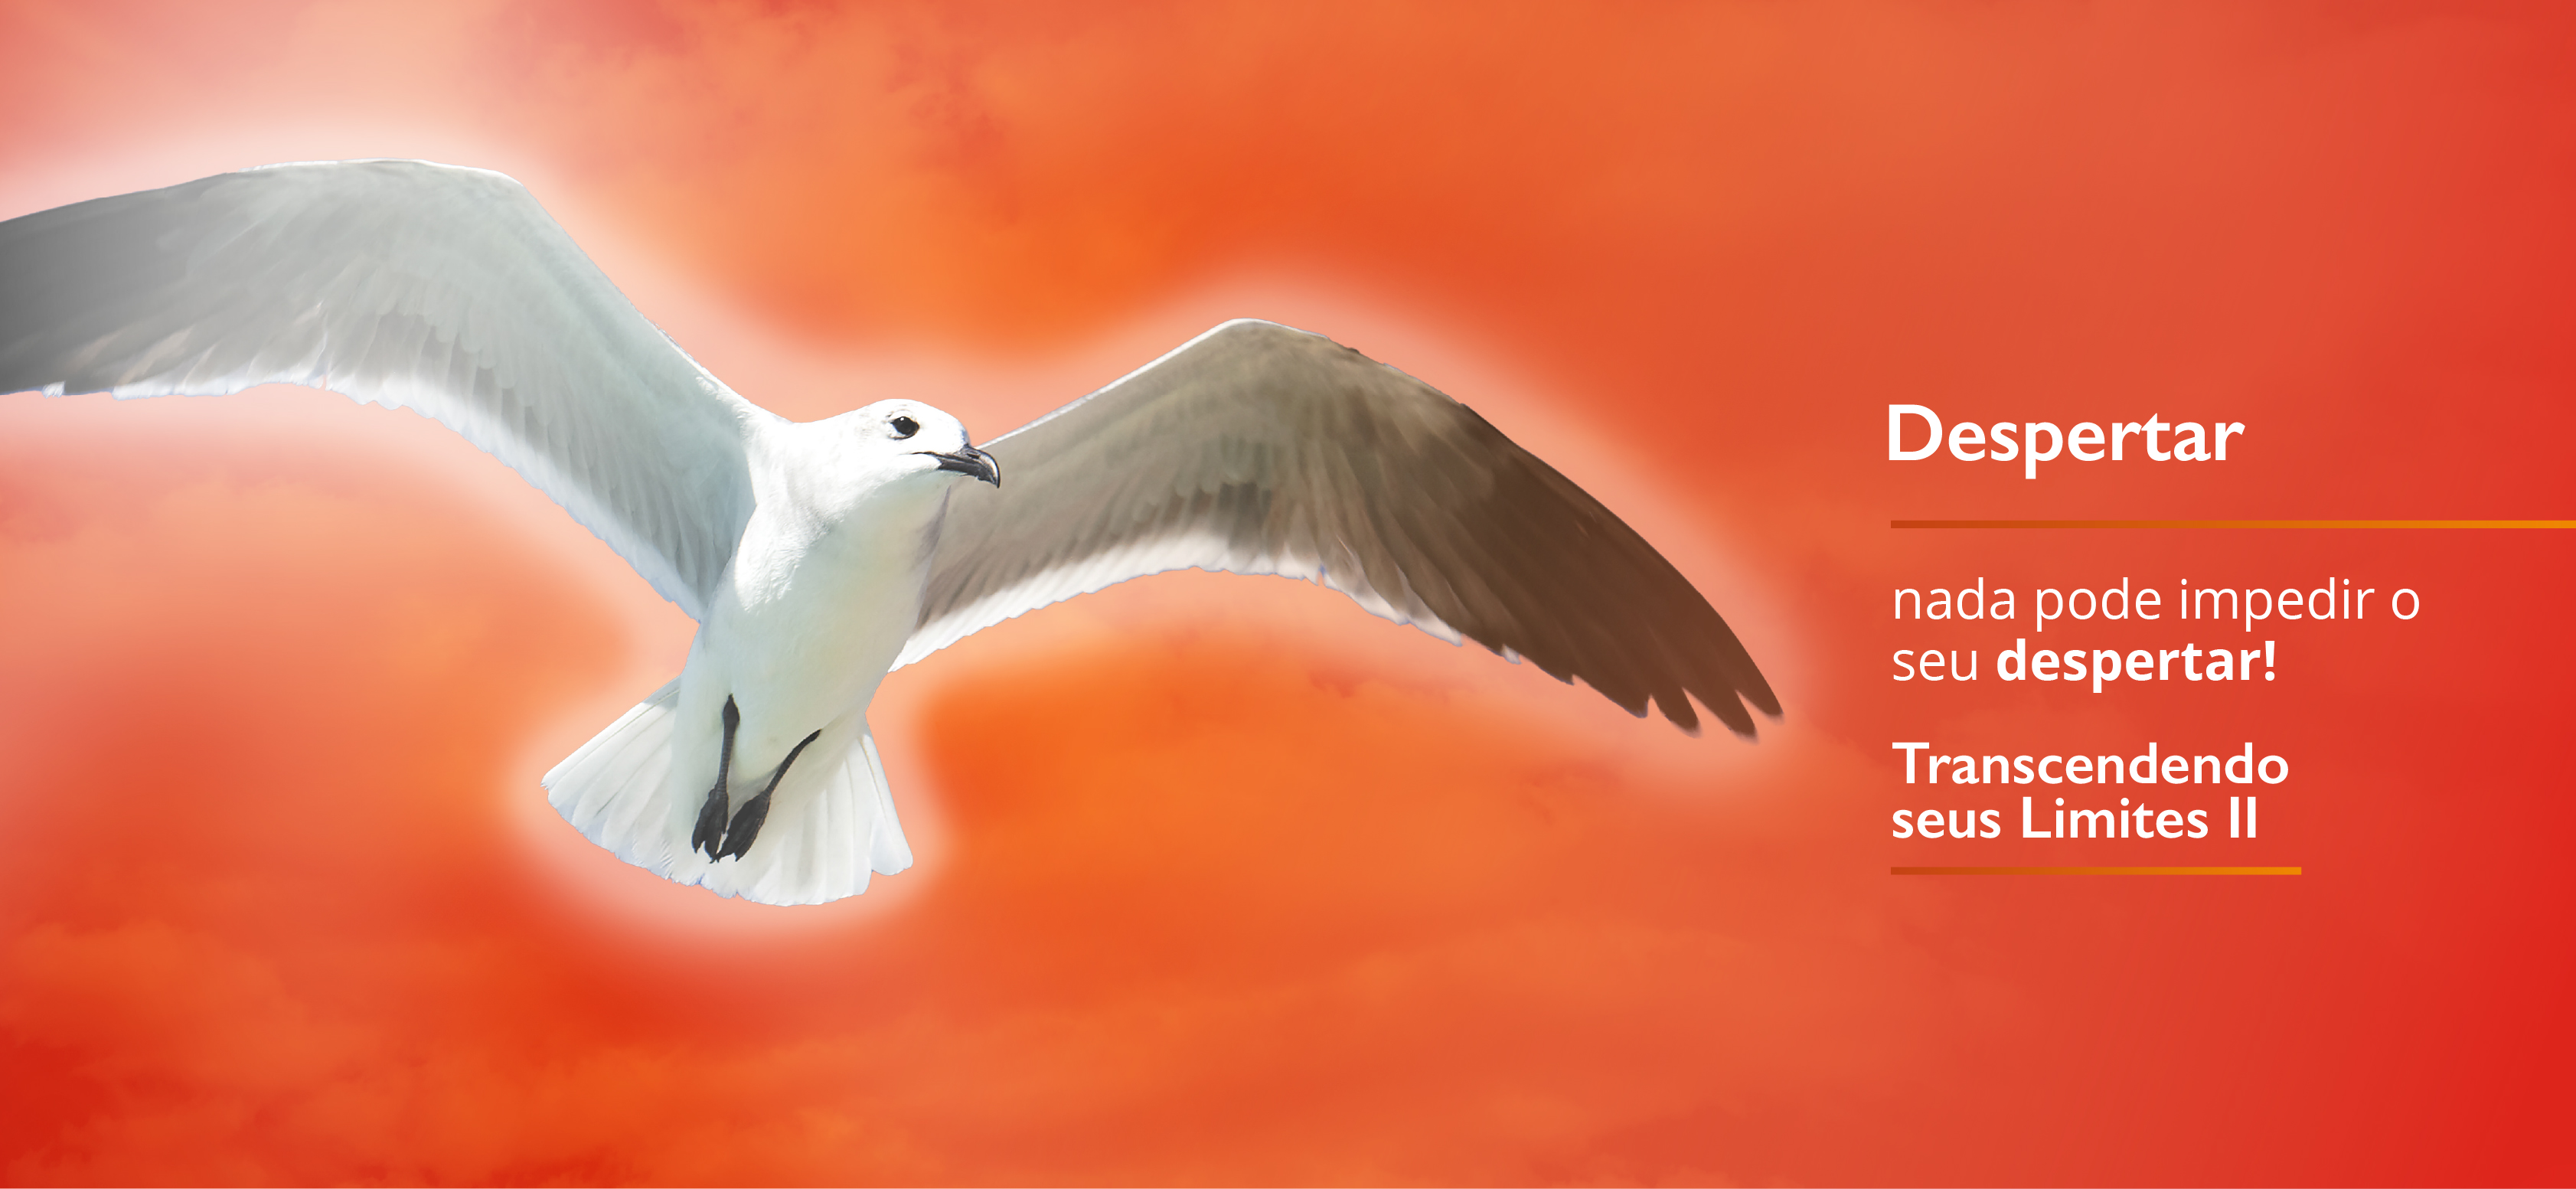 Imagem de um gaivota voando. Representa o treinamento
          Despertar - TL2